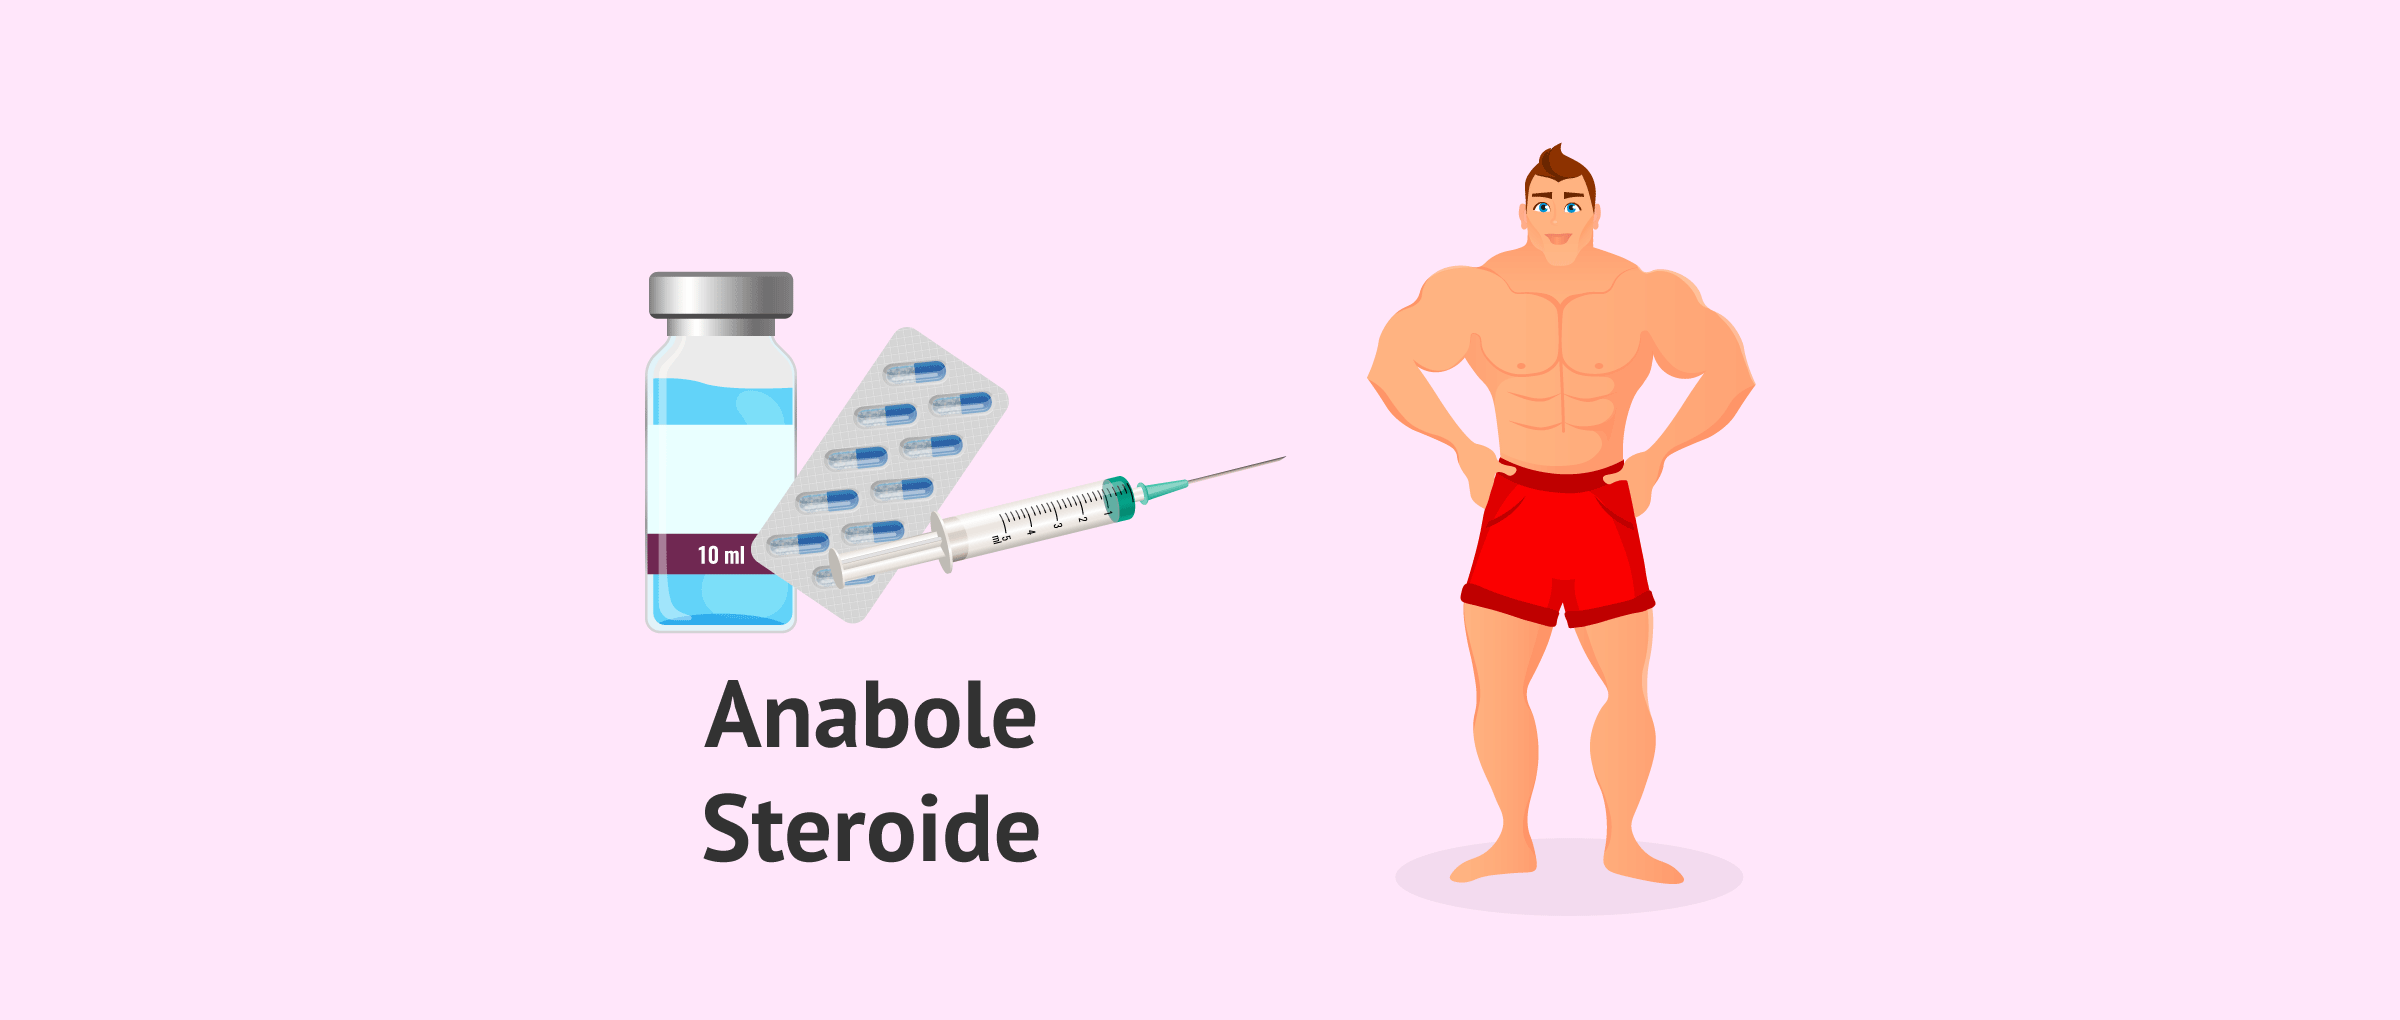 anabolika muskelaufbau - Nicht für jedermann